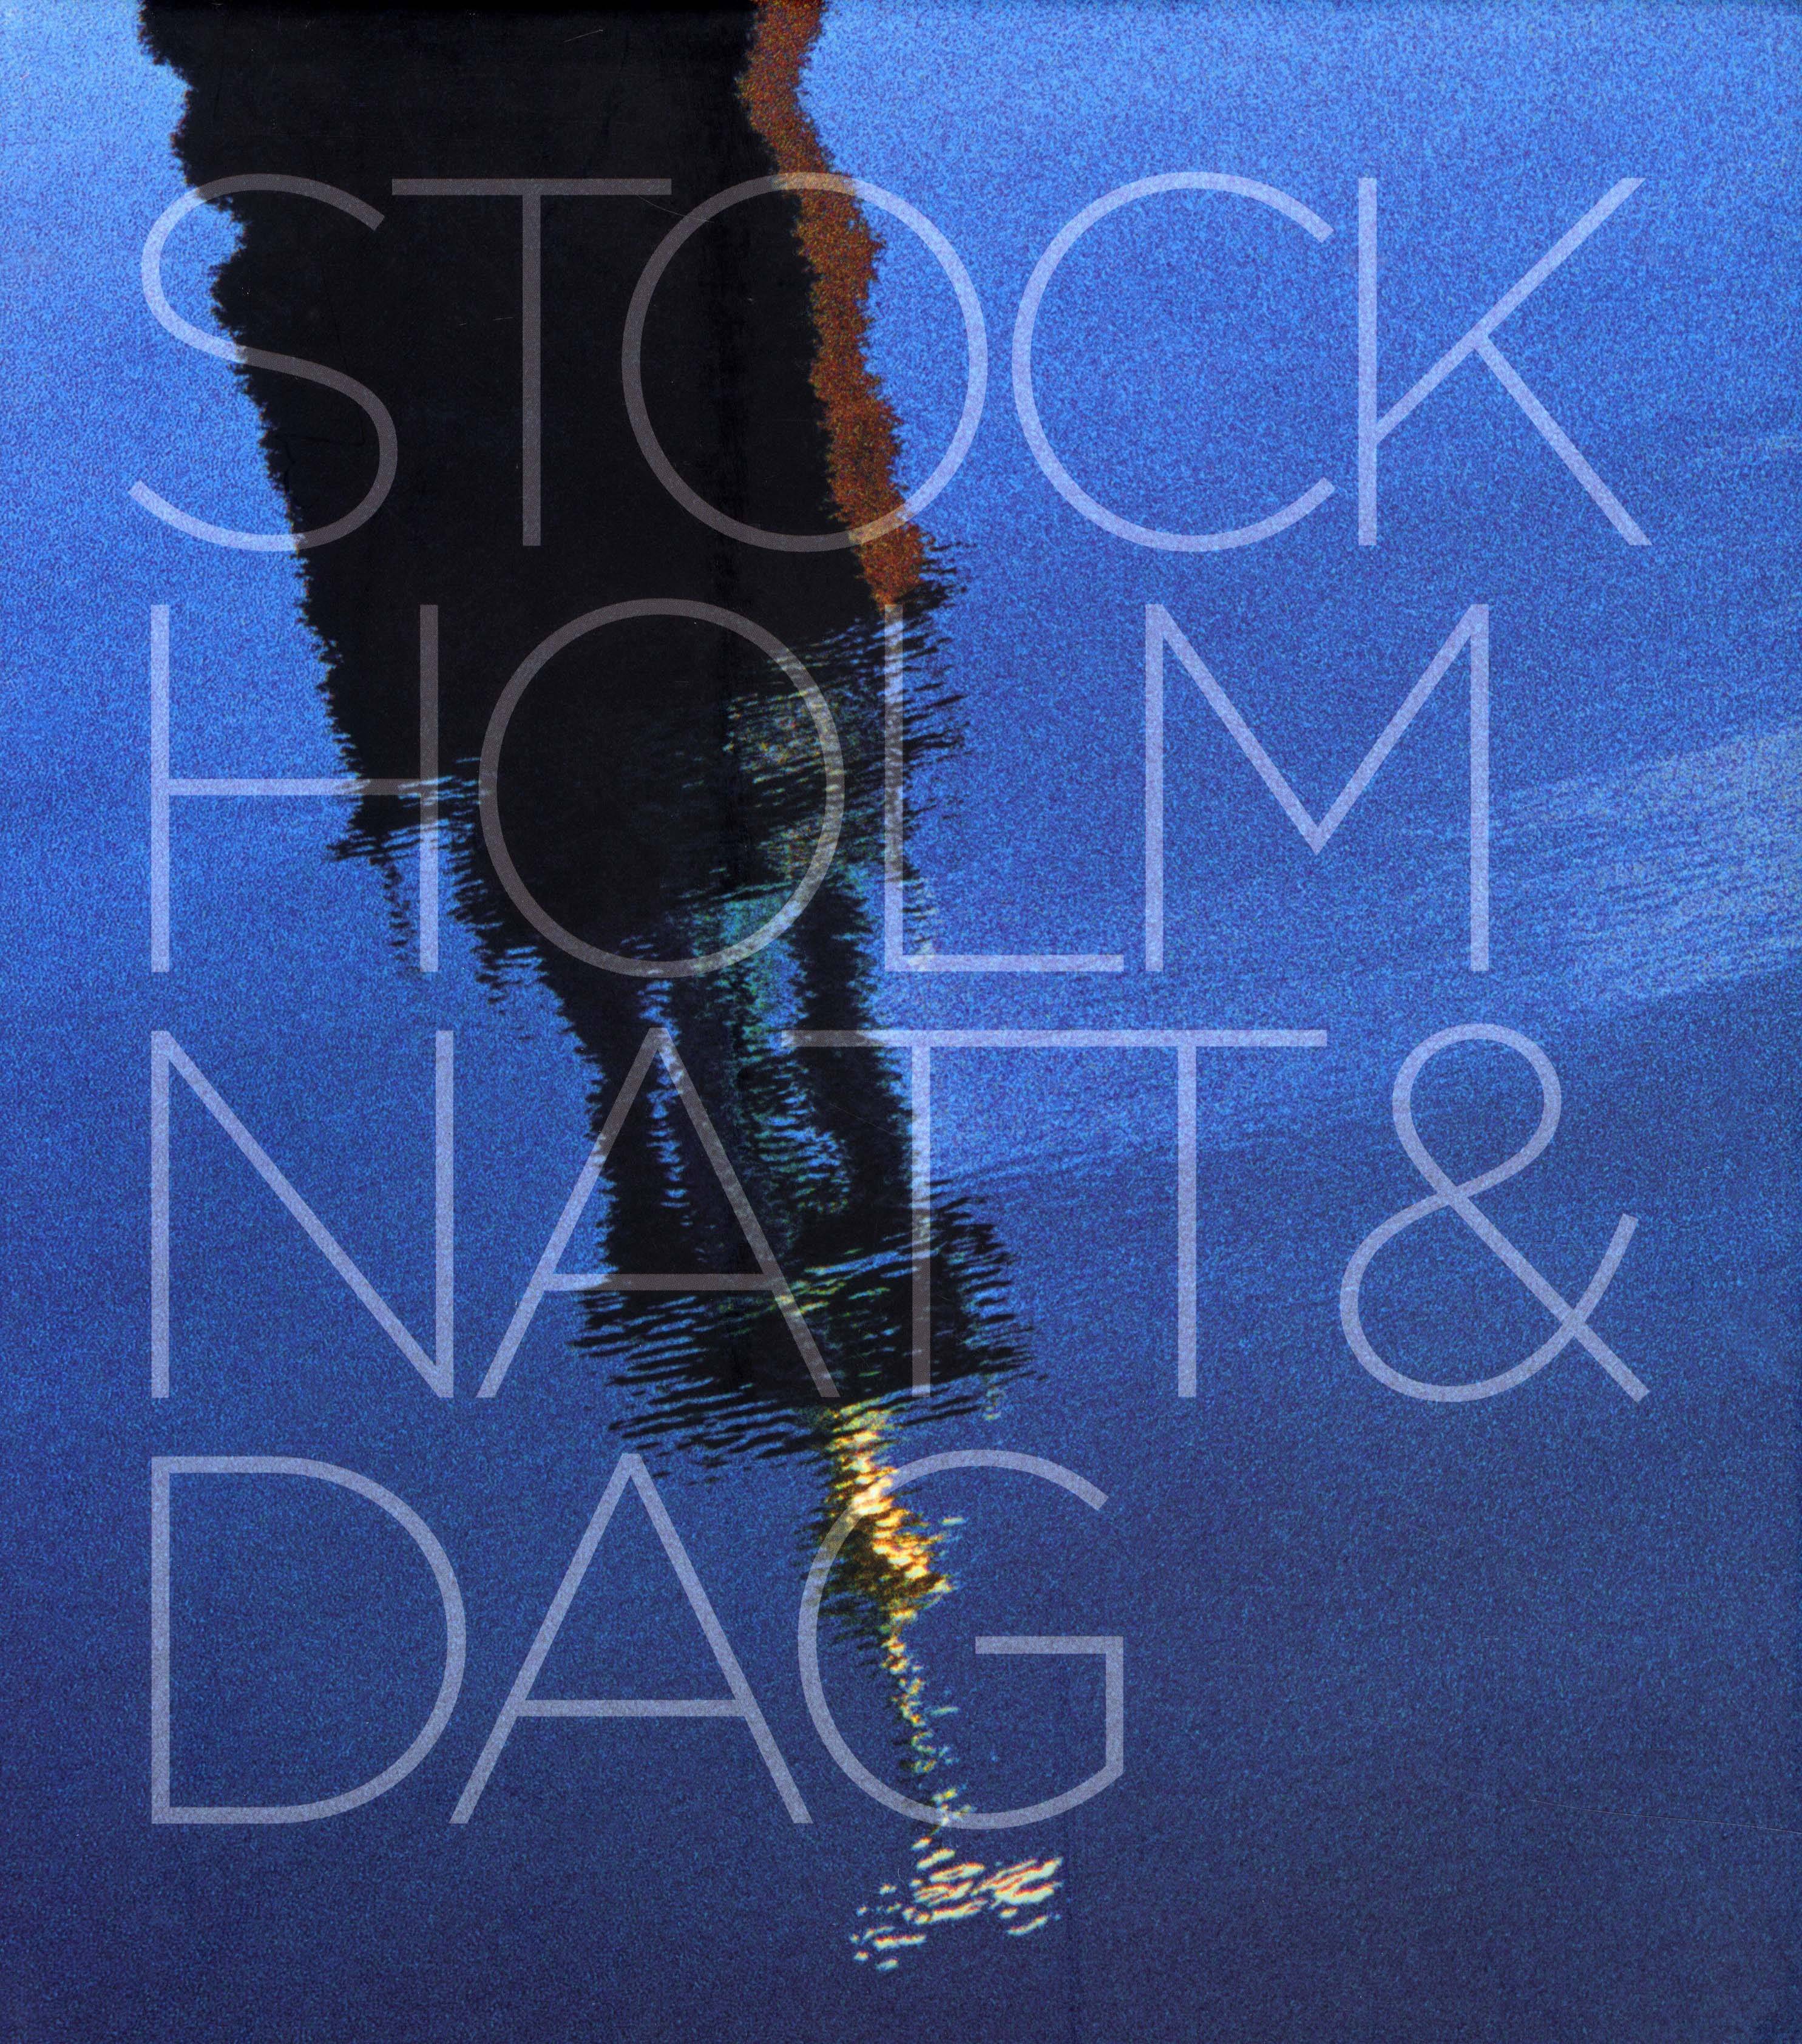 Stockholm natt & dag